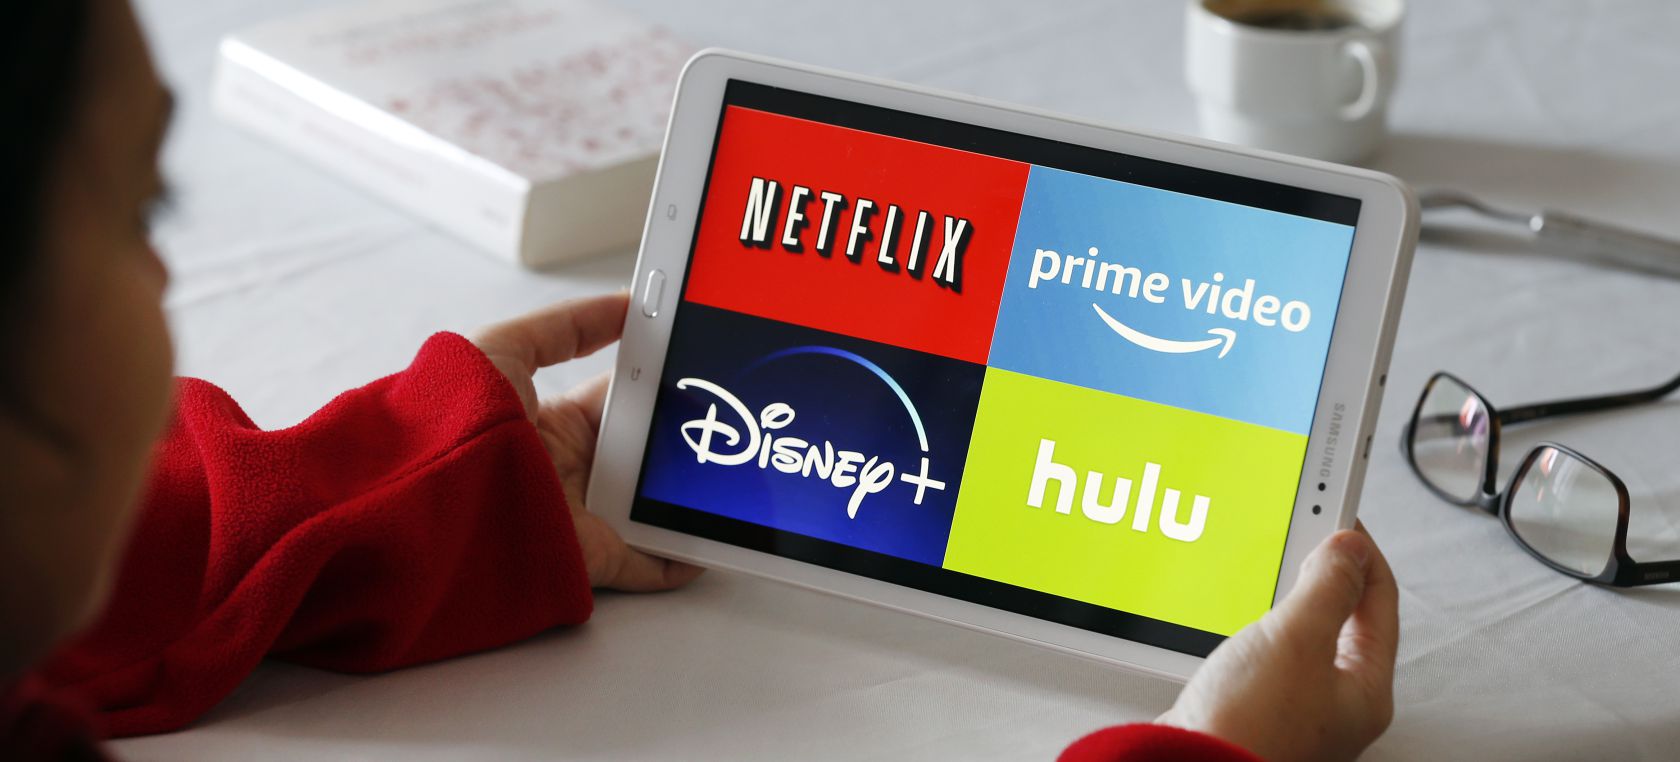 Guerra Entre Netflix Disney Y Amazon Prime Video Que Plataforma Tiene Mas Usuarios Cine Y Television Los40